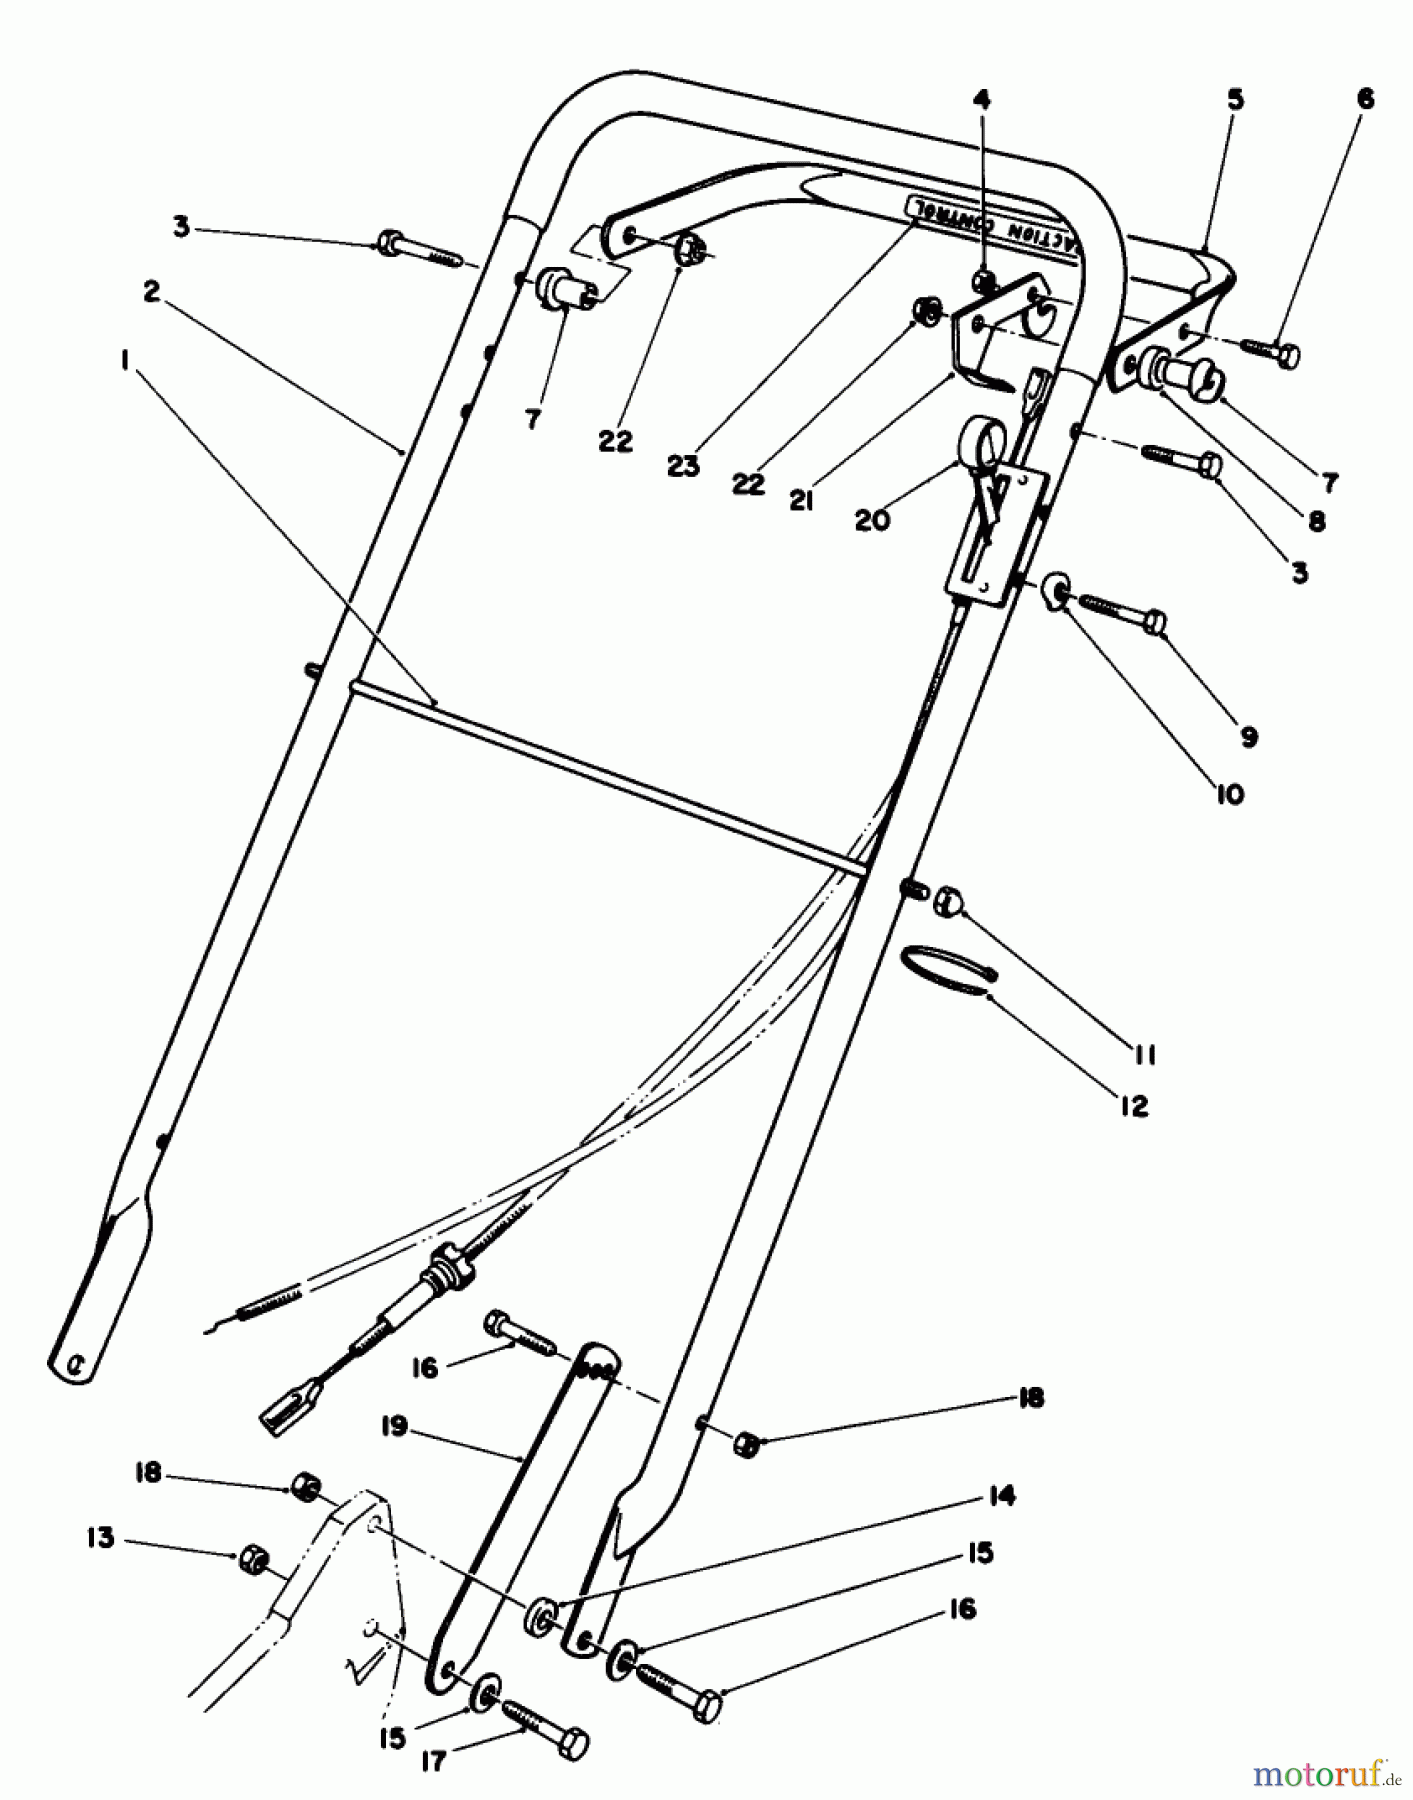  Toro Neu Mowers, Walk-Behind Seite 2 22030 - Toro Lawnmower, 1989 (9000001-9999999) HANDLE ASSEMBLY (MODEL 22035)